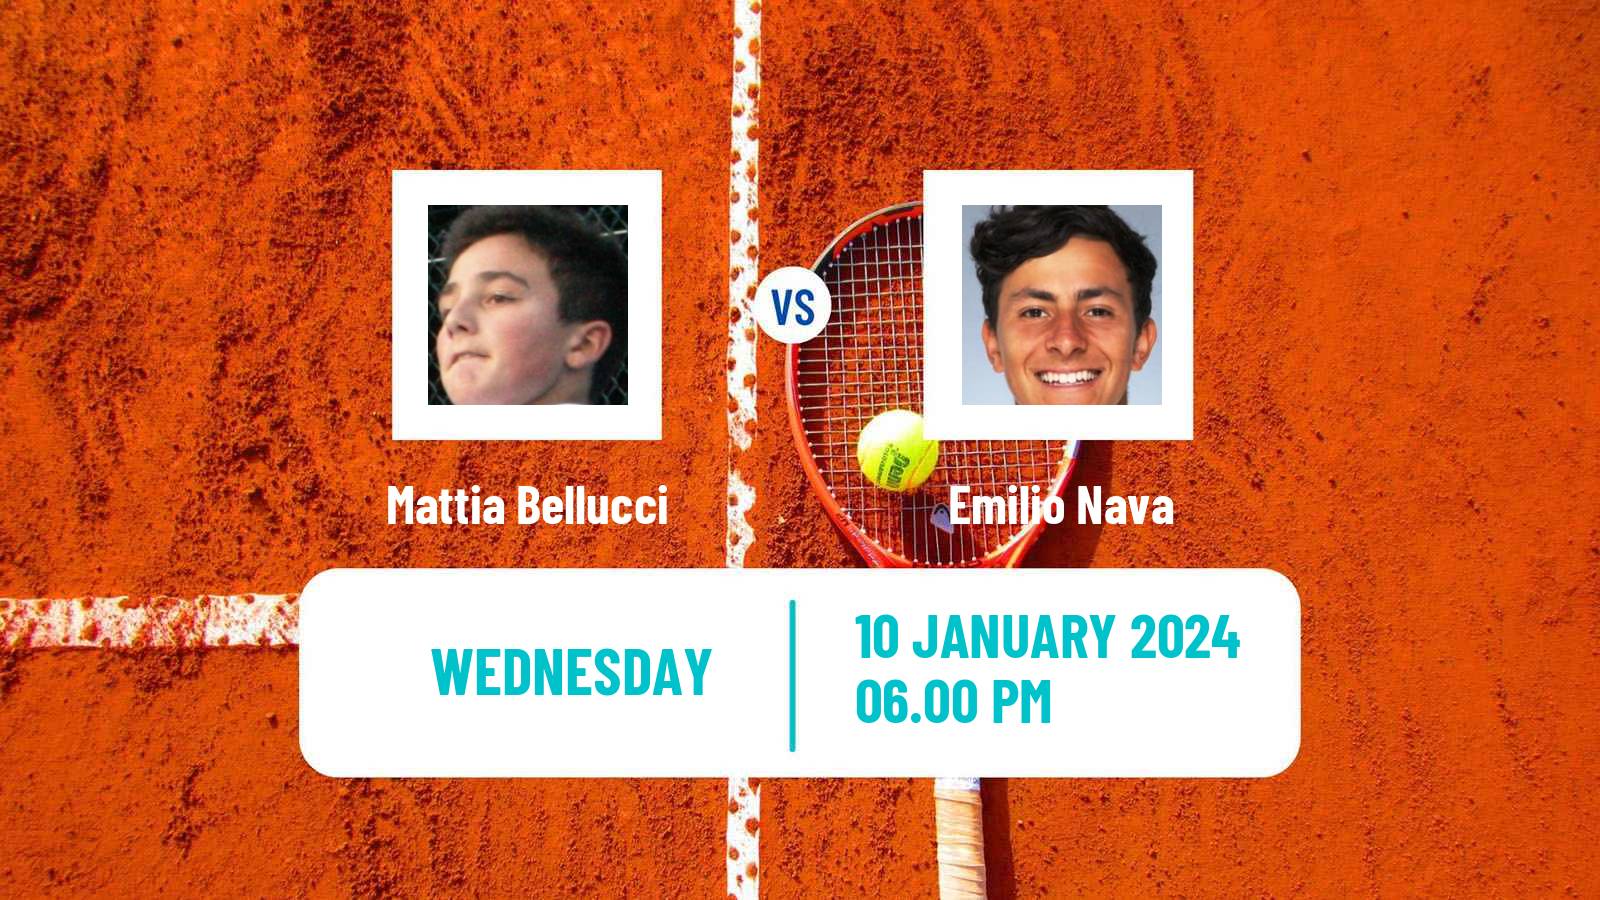 Tennis ATP Australian Open Mattia Bellucci - Emilio Nava